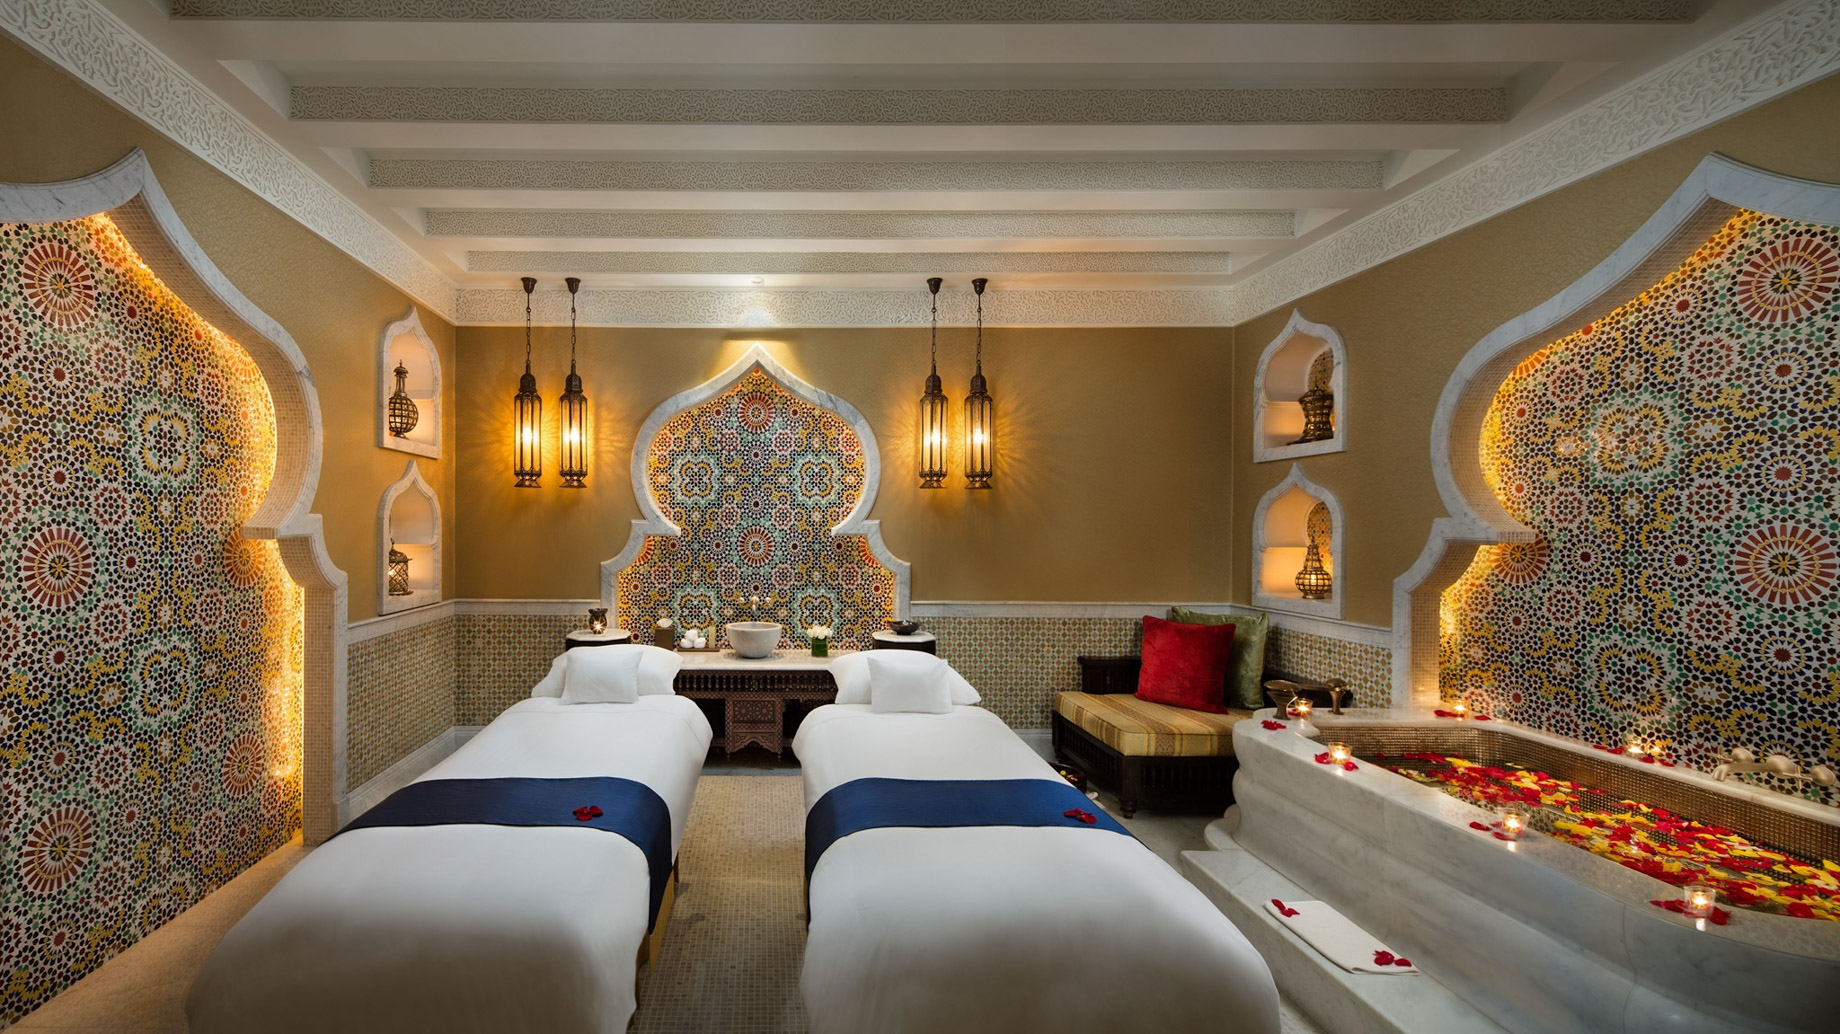 Emirates Palace Abu Dhabi Hotel – Abu Dhabi, UAE – Spa Treatment Room